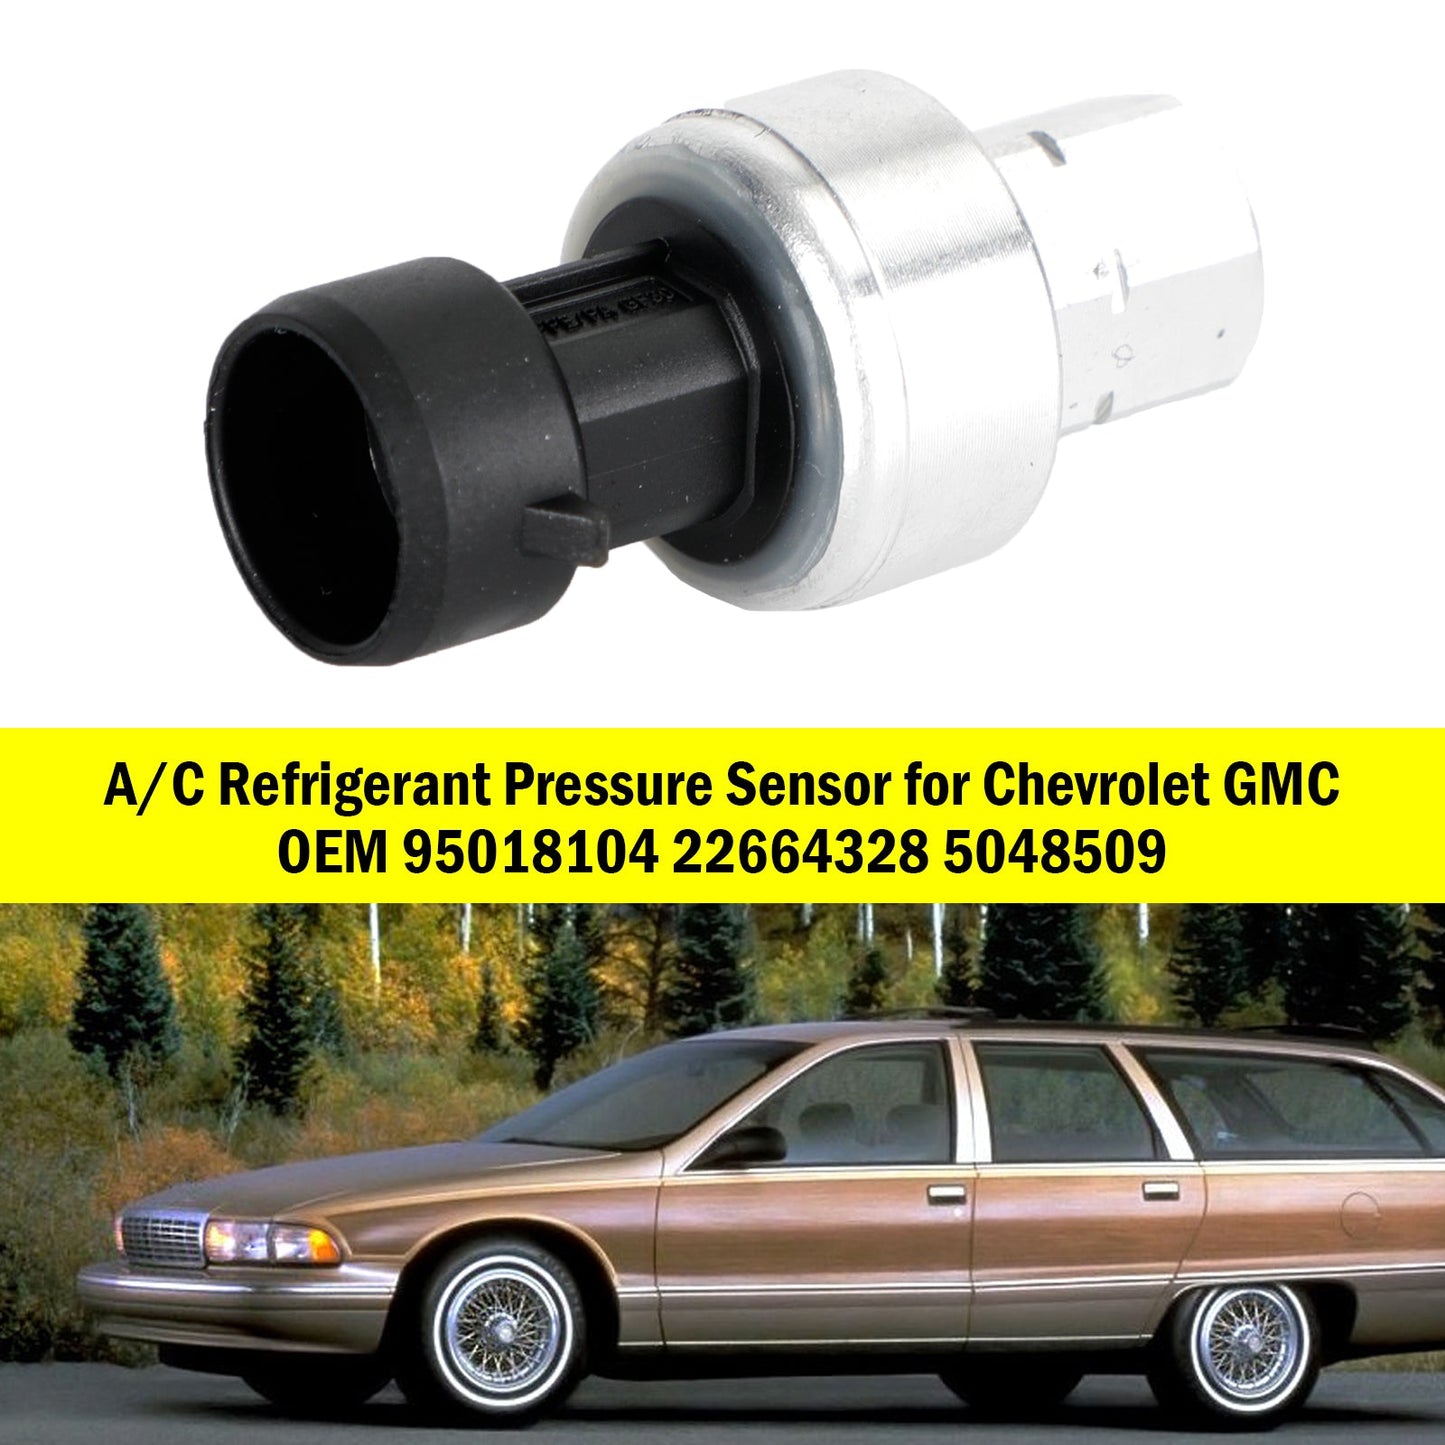 A/C -Kältemitteldrucksensor für Chevrolet GMC 95018104 22664328 5048509 Generikum